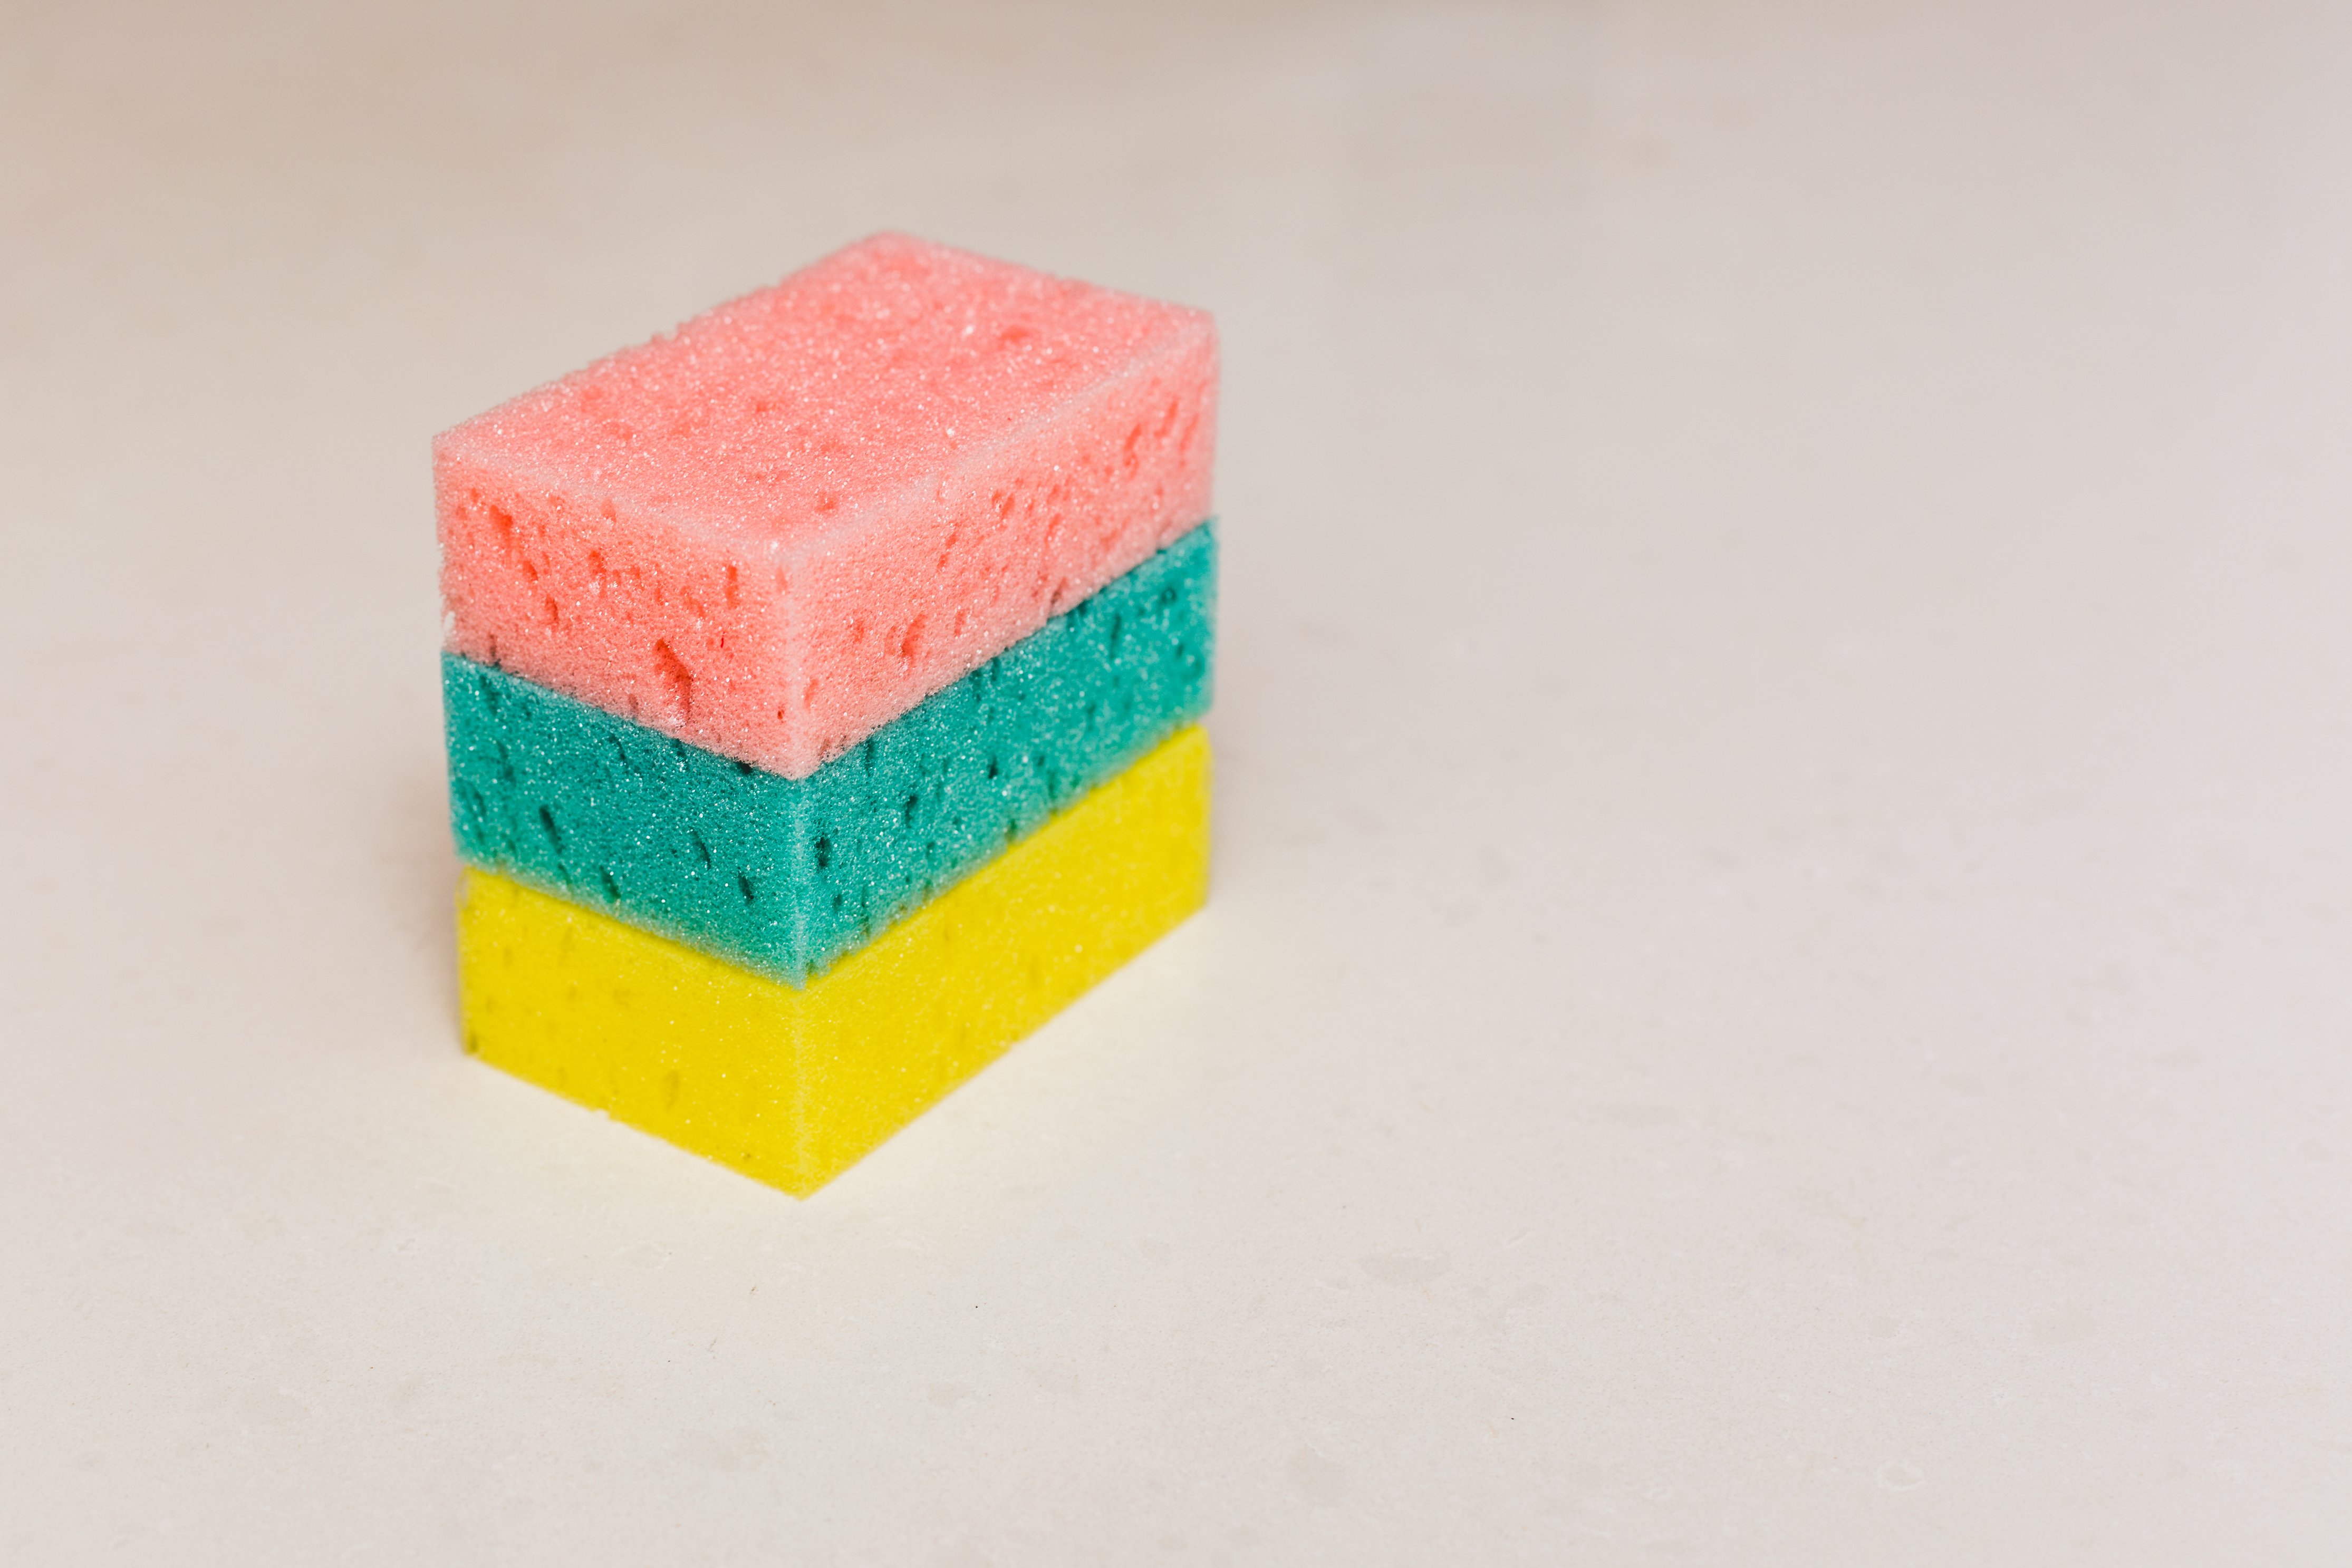 how long do you microwave a sponge